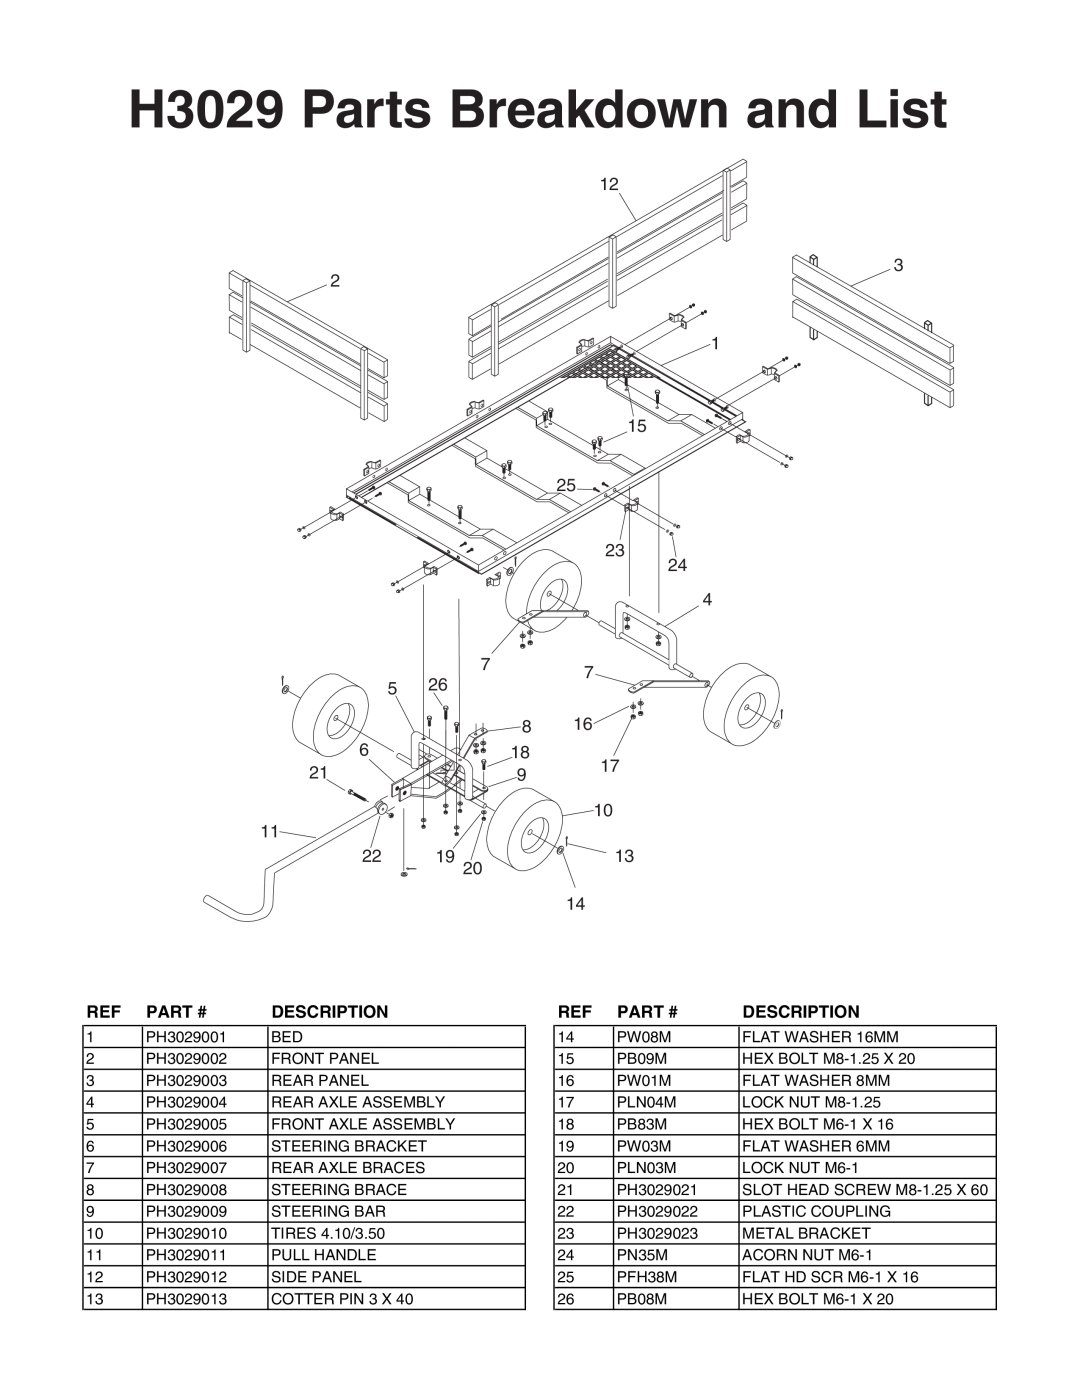 Grizzly instruction sheet H3029 Parts Breakdown and List, Part #, Description 